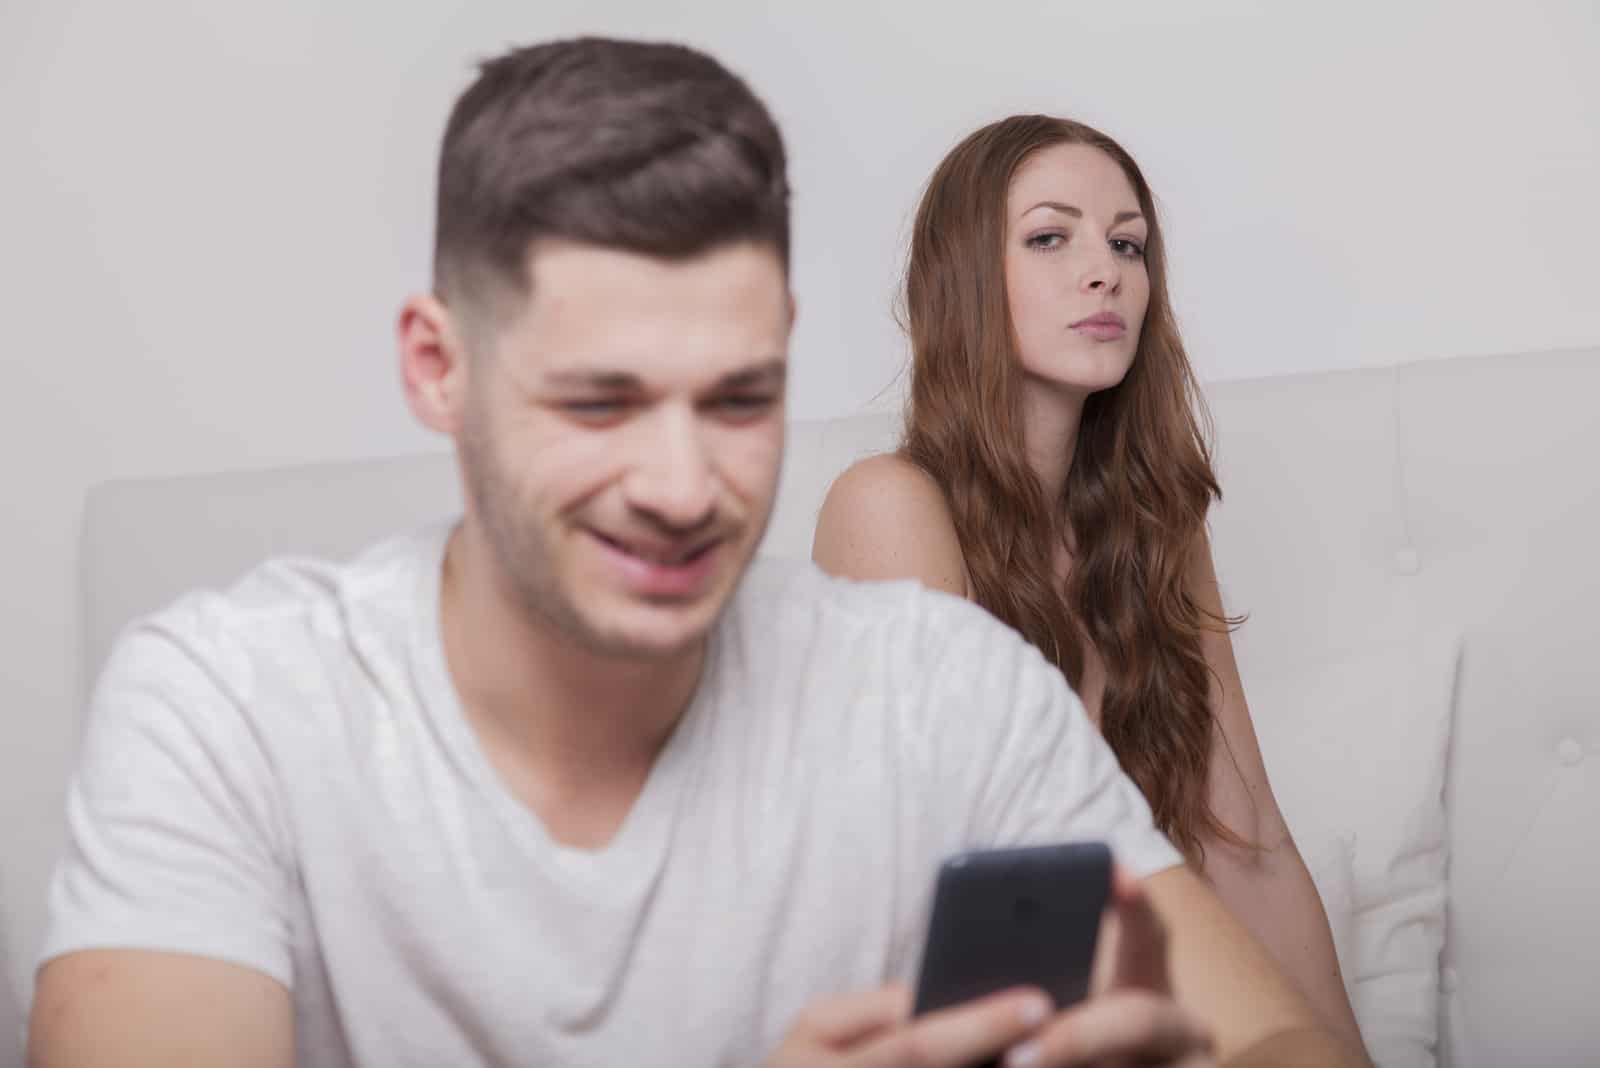 Der Mann erhält eine Nachricht auf dem Smartphone, während die Frau eifersüchtig aussieht